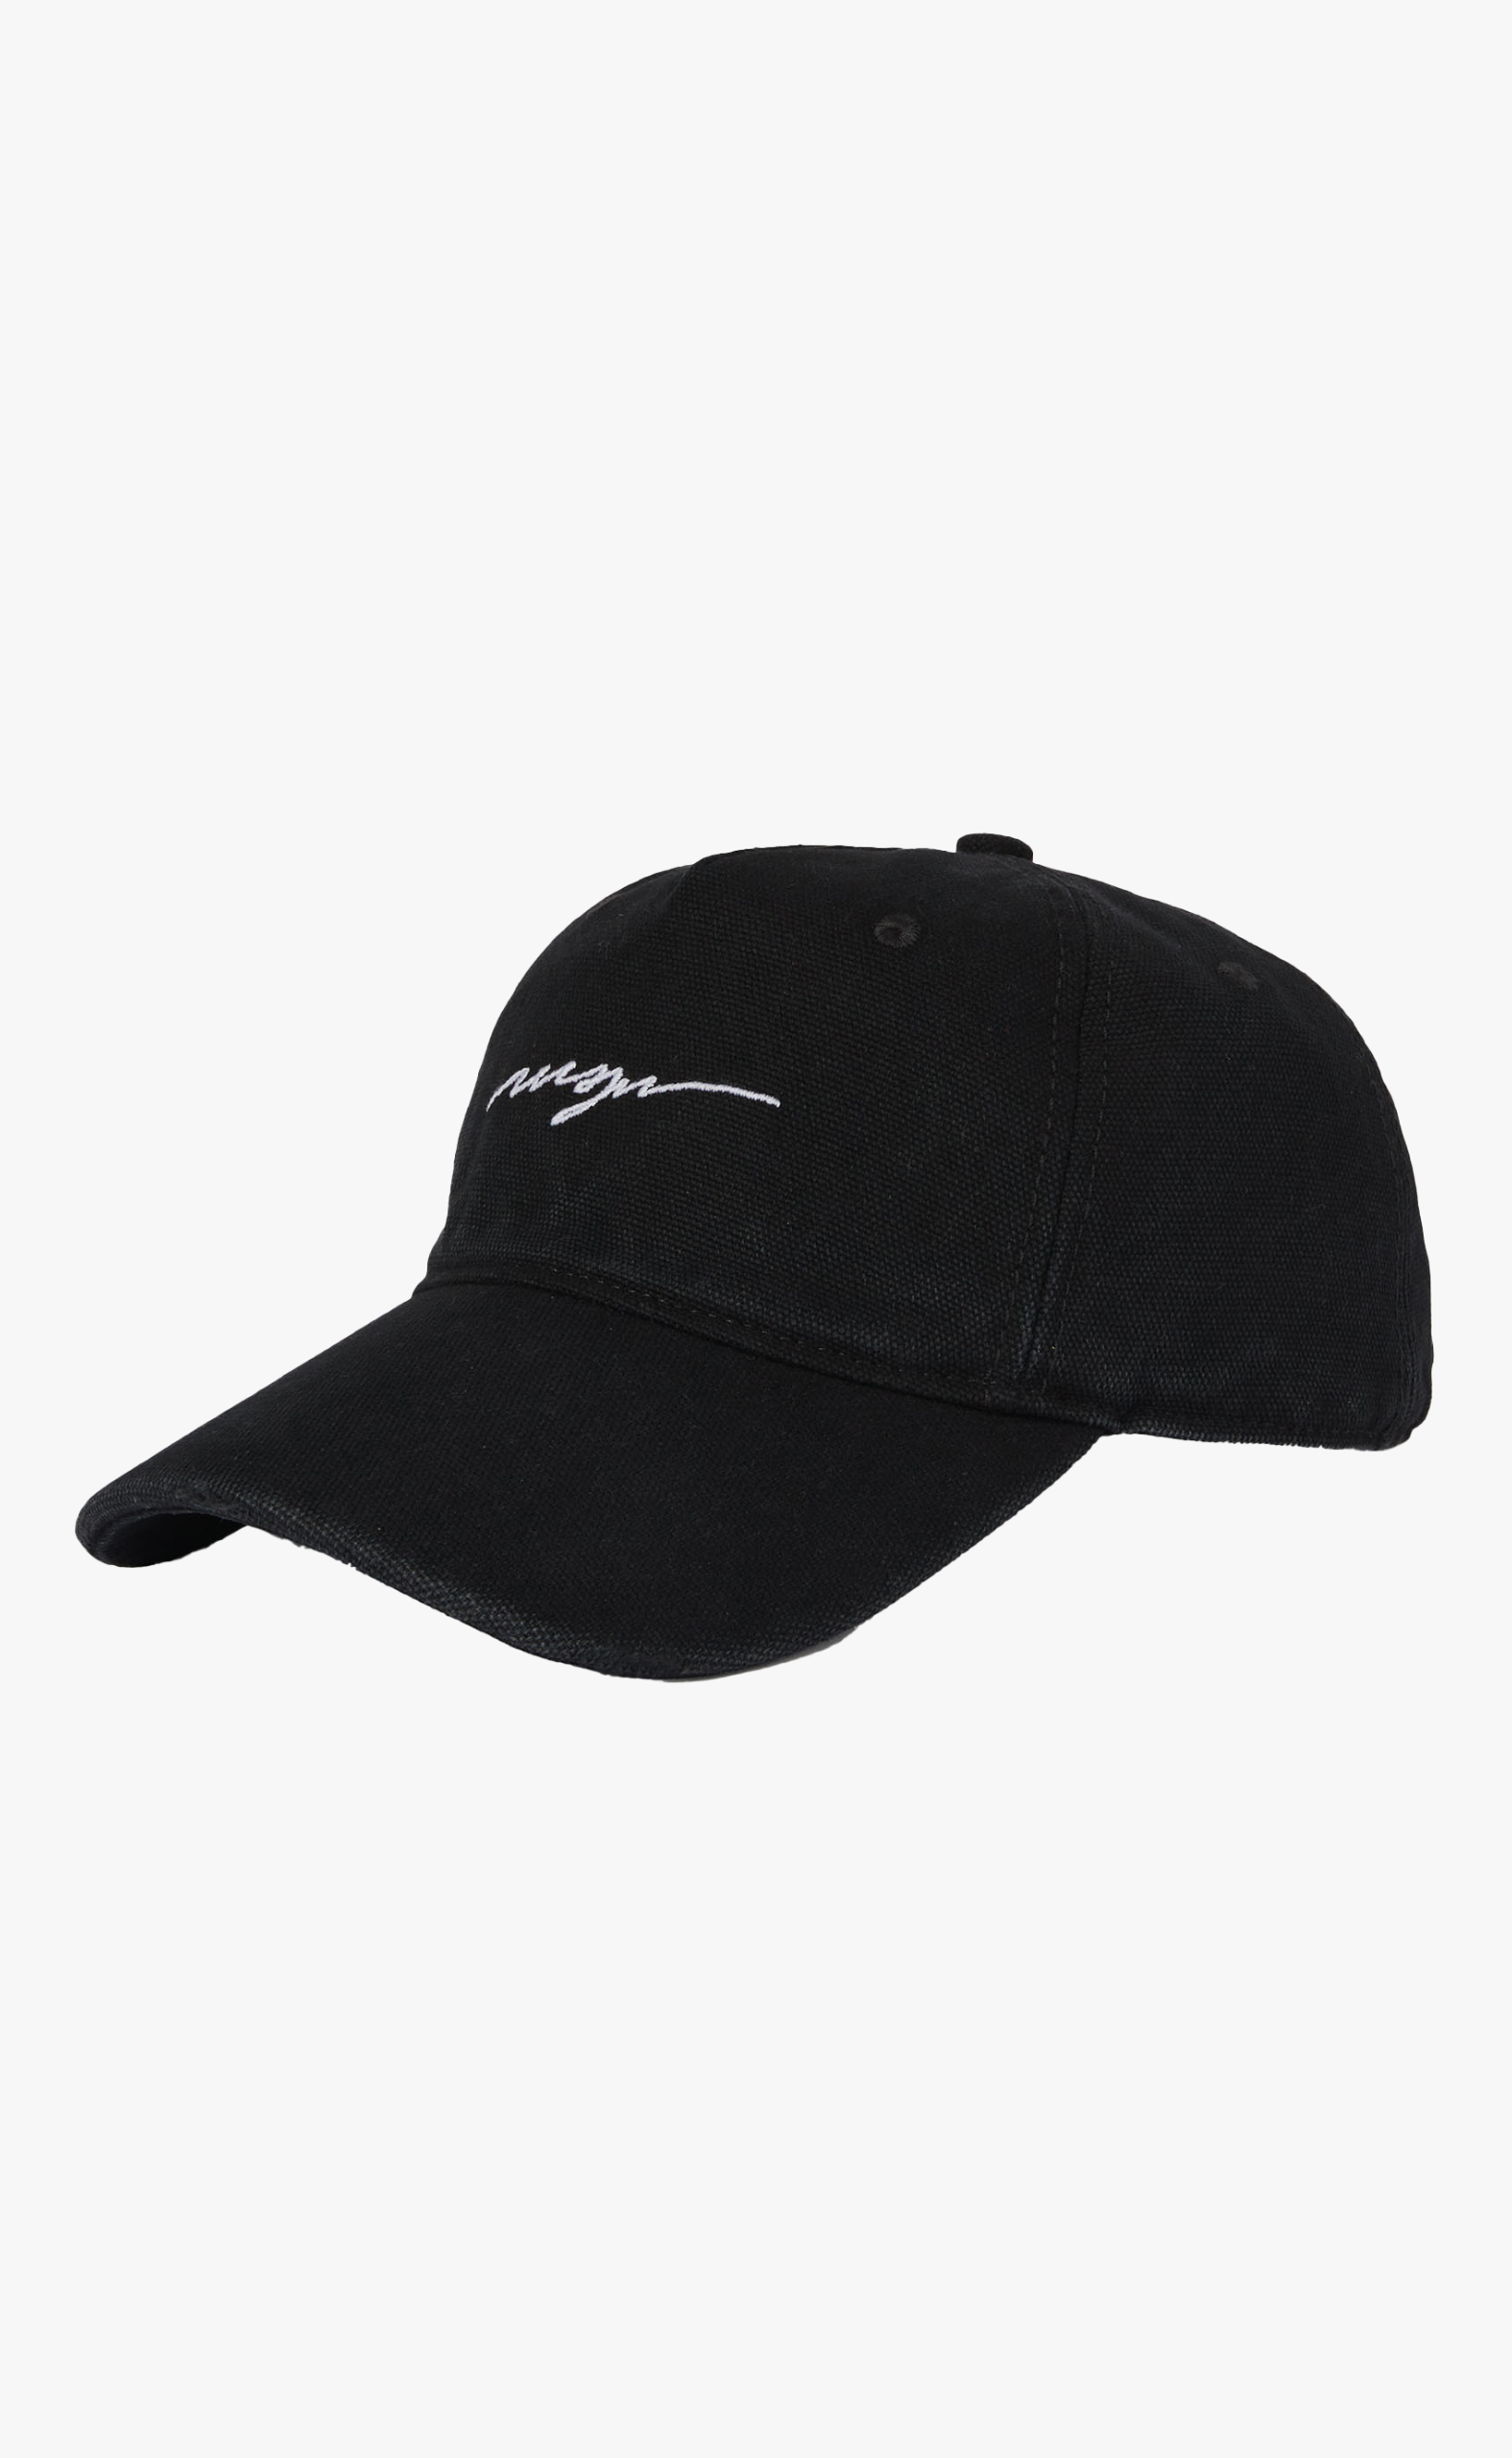 NEW SIGNATURE BLACK HAT